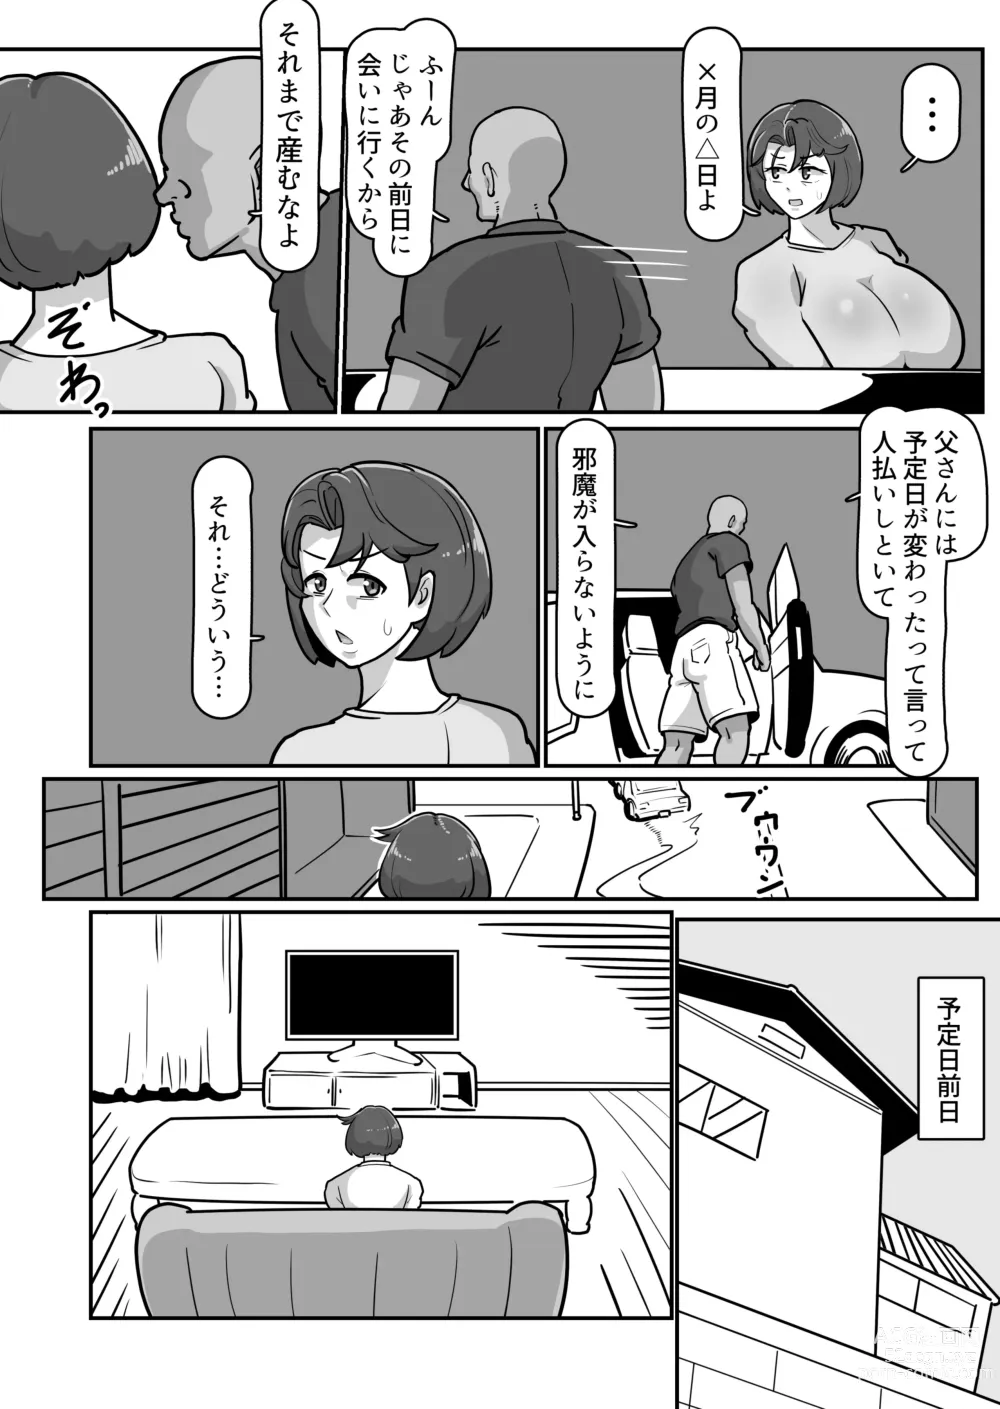 Page 61 of doujinshi Bote Haha ~Ore o Jikka kara Oidashita Mukatsuku Hahaoya o Muriyari Haramasete Botehara Sex Zanmai!~